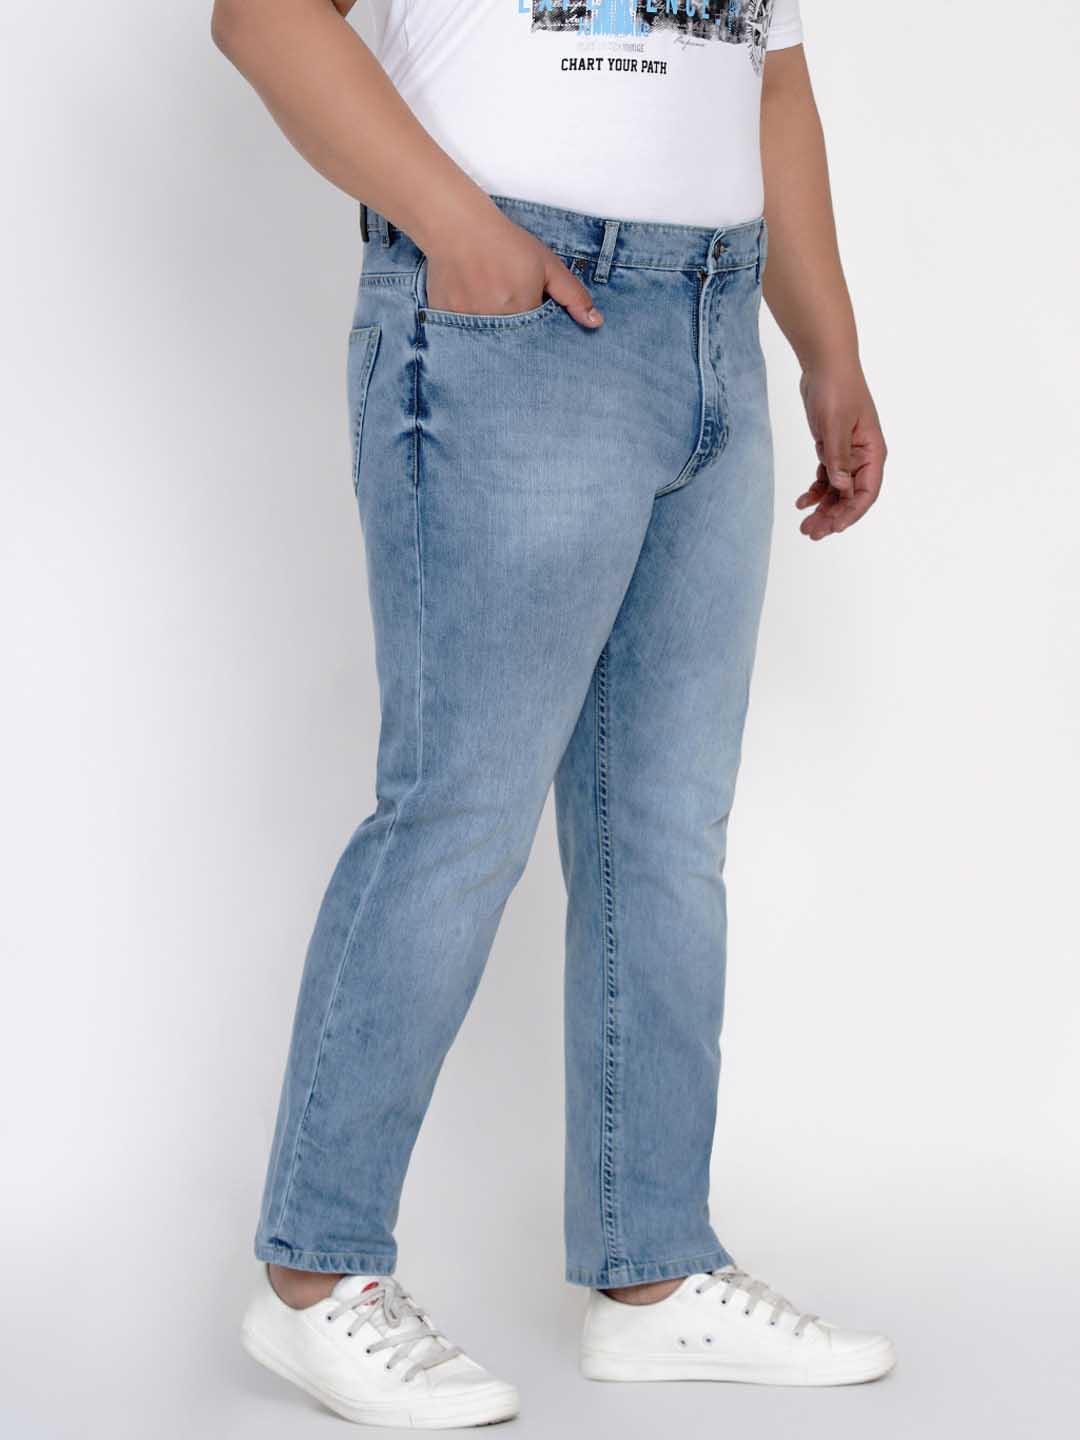 affordables/jeans/JPJ2558/jpj2558-3.jpg